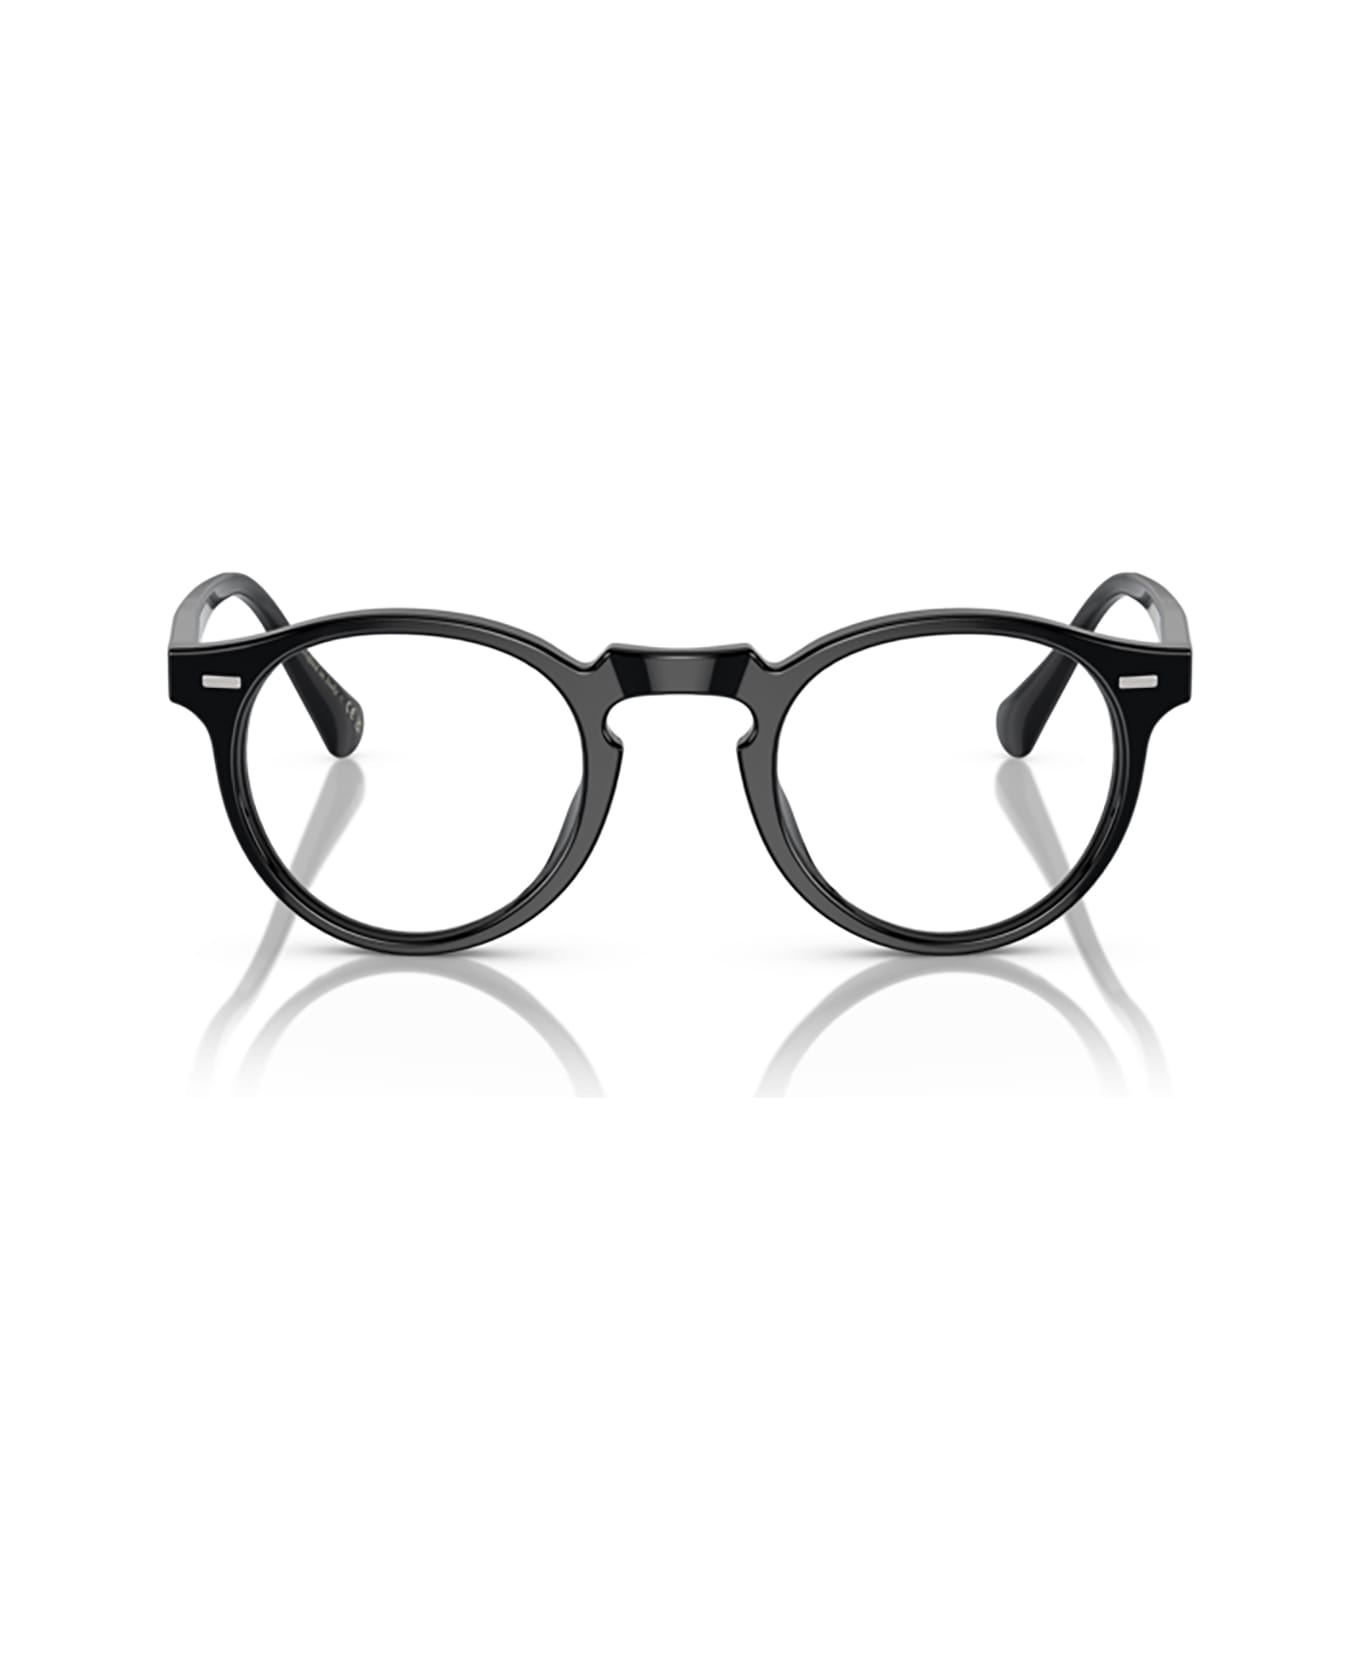 Oliver Peoples Ov5217s Black Sunglasses - Black